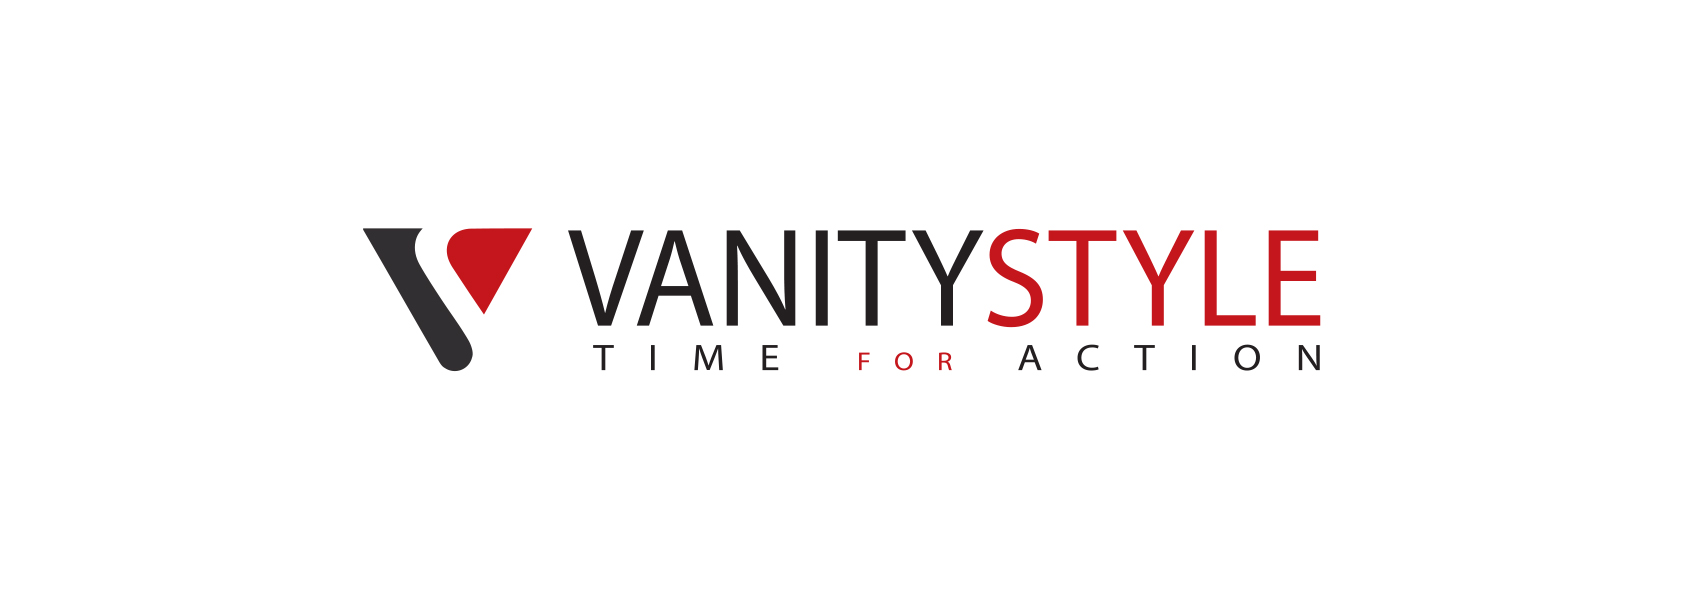 vanity_style_logo